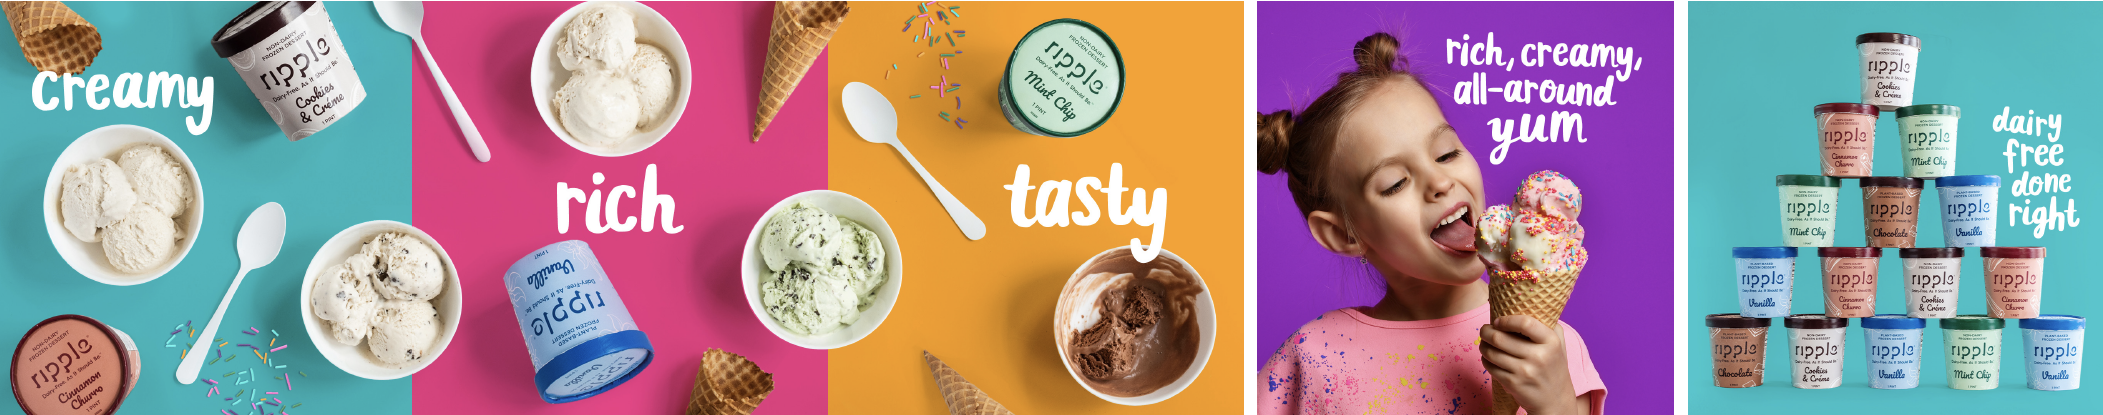 Ripple ad: Creamy, Rich, Tasty, All-Around Yum.